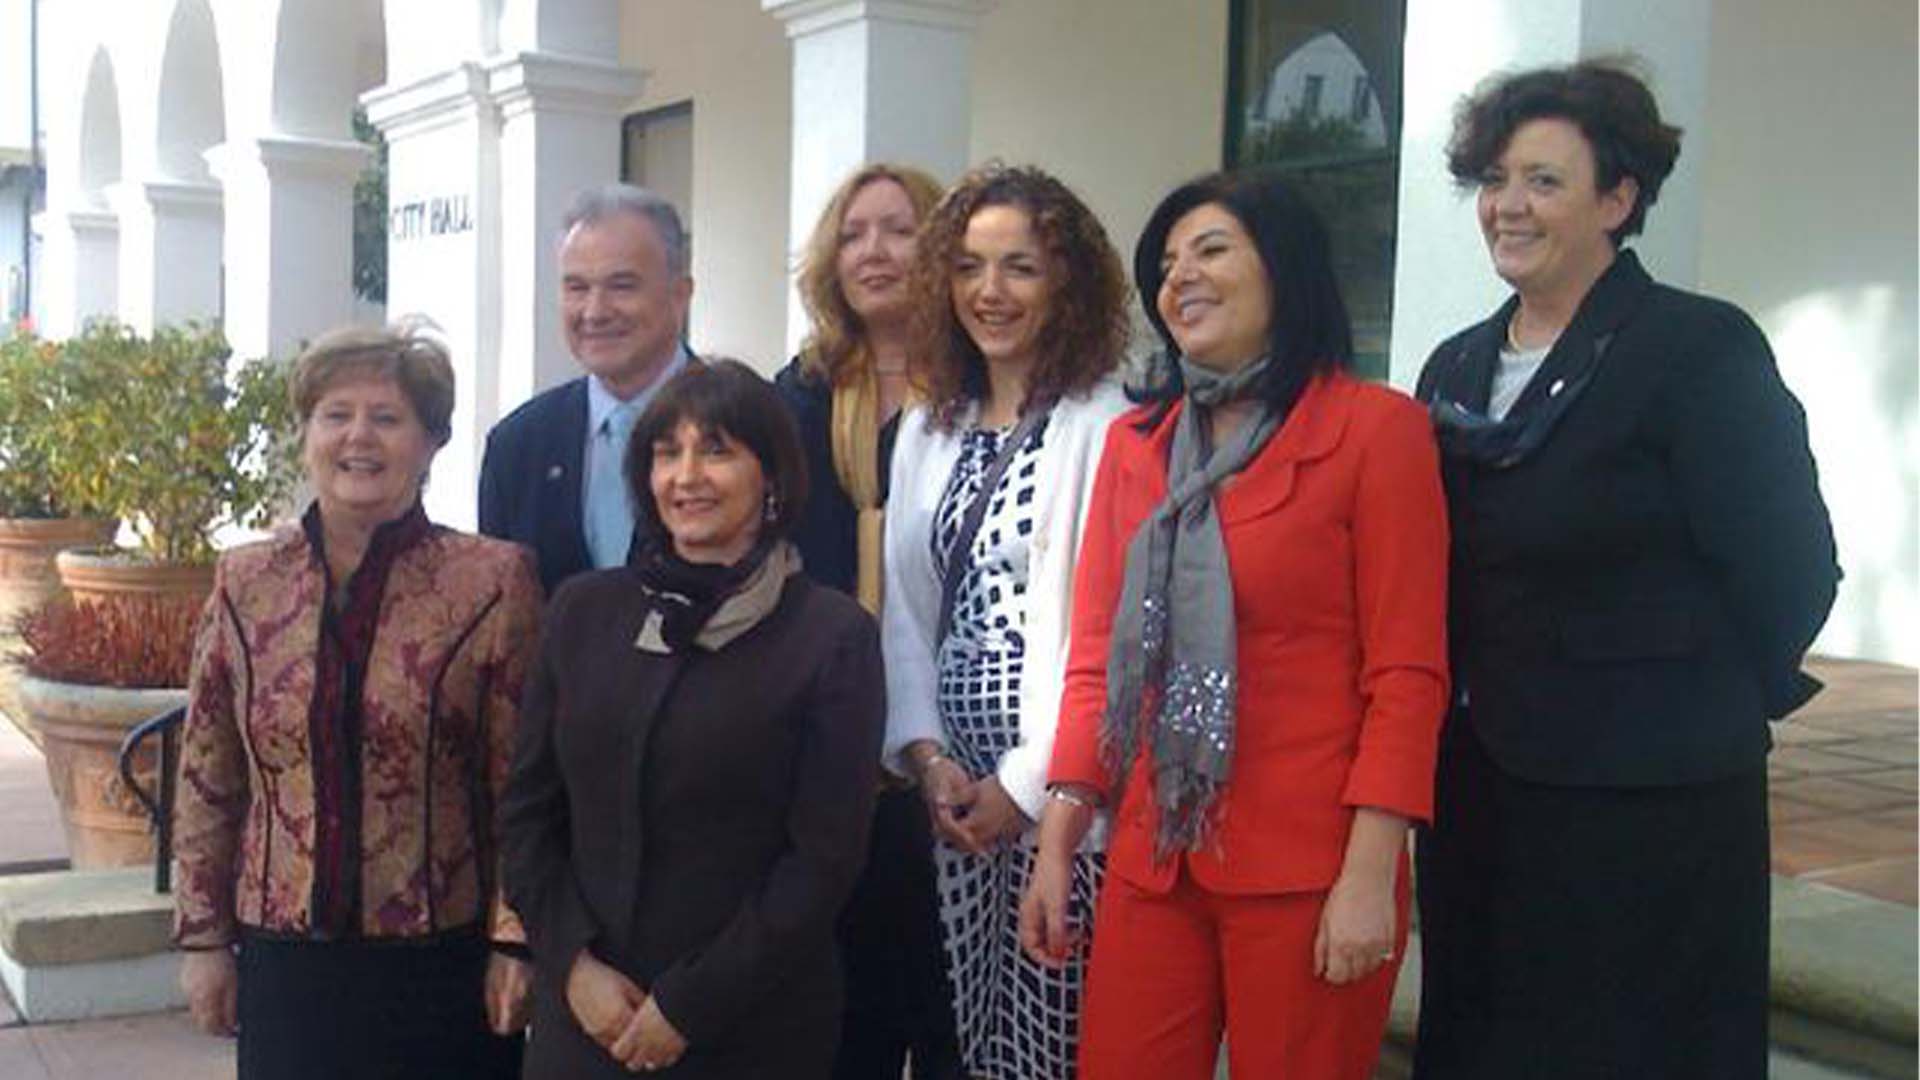 February 2010 Kotor’s Mayor Marija Ćatović and delegation visit Santa Barbara.